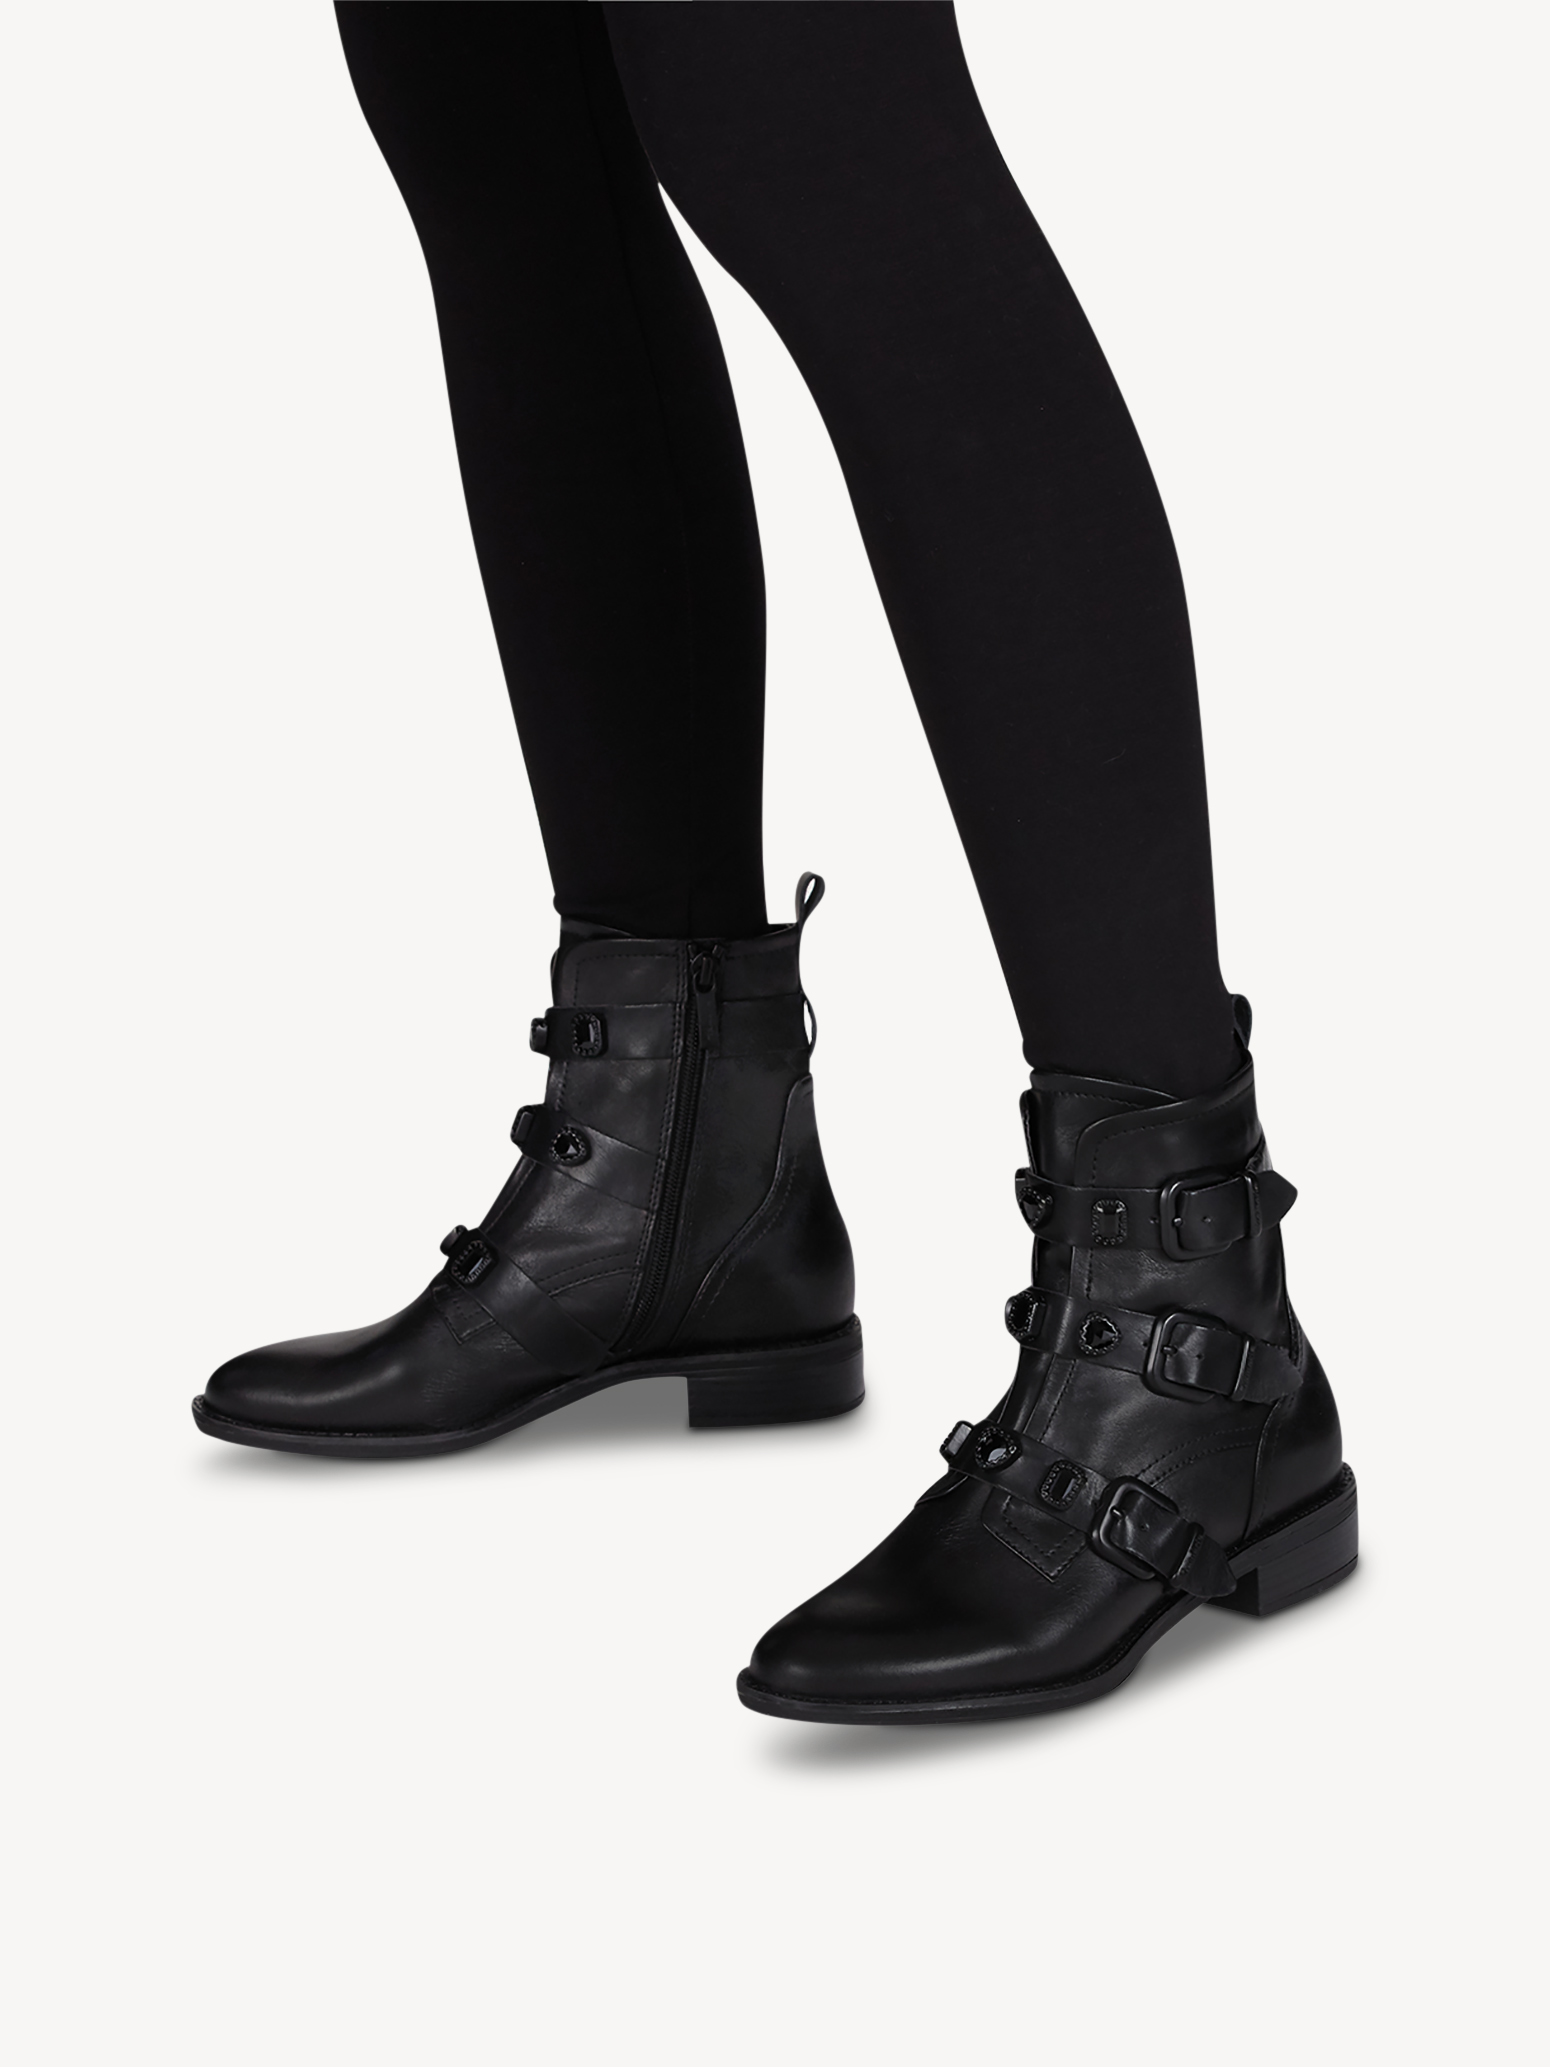 Ботинки женские 5 AW20 (черный) - изображение №1